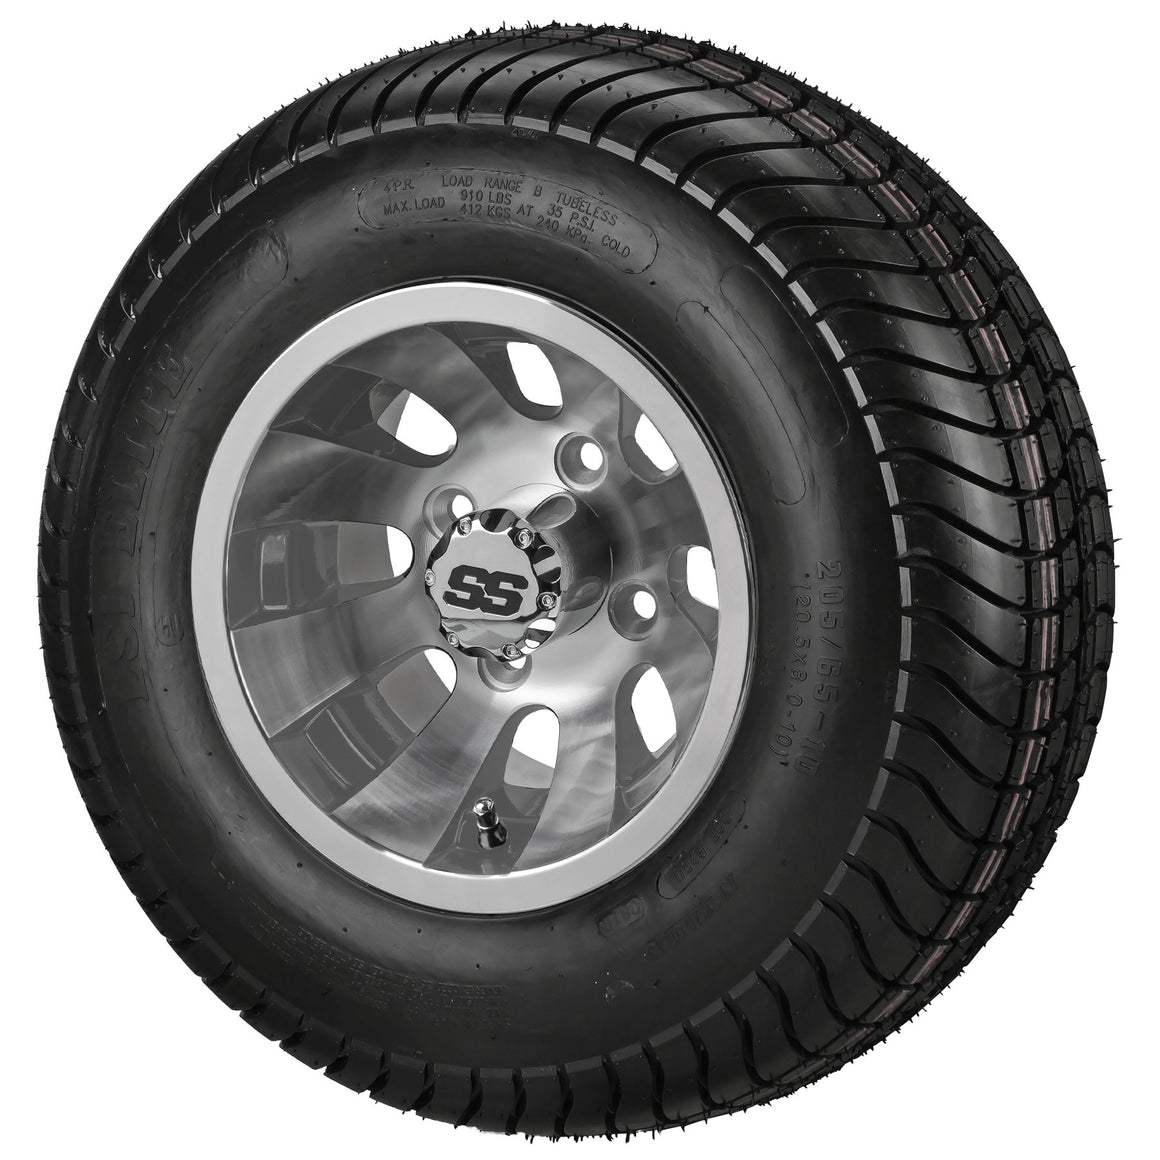 10" Gunslinger Wheels on LSI Elite Tires Combo